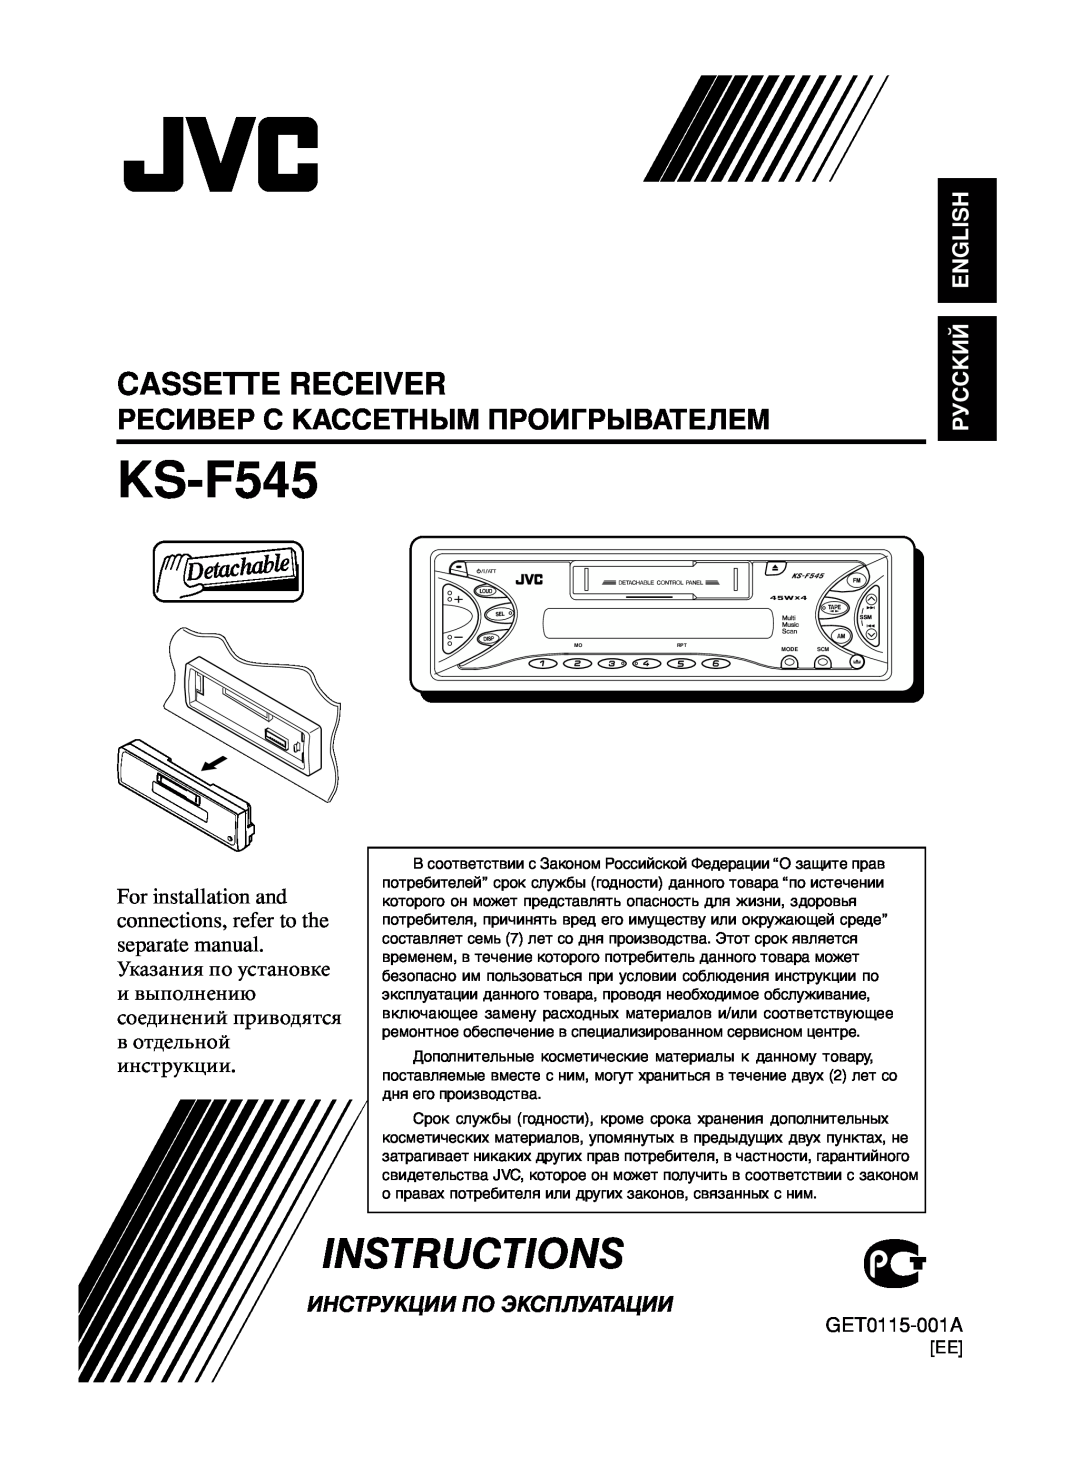 JVC KS-F545 manual Cassette Receiver, Instructions, Ресивер С Кассетным Проигрывателем, Инструкции По Эксплуатации 